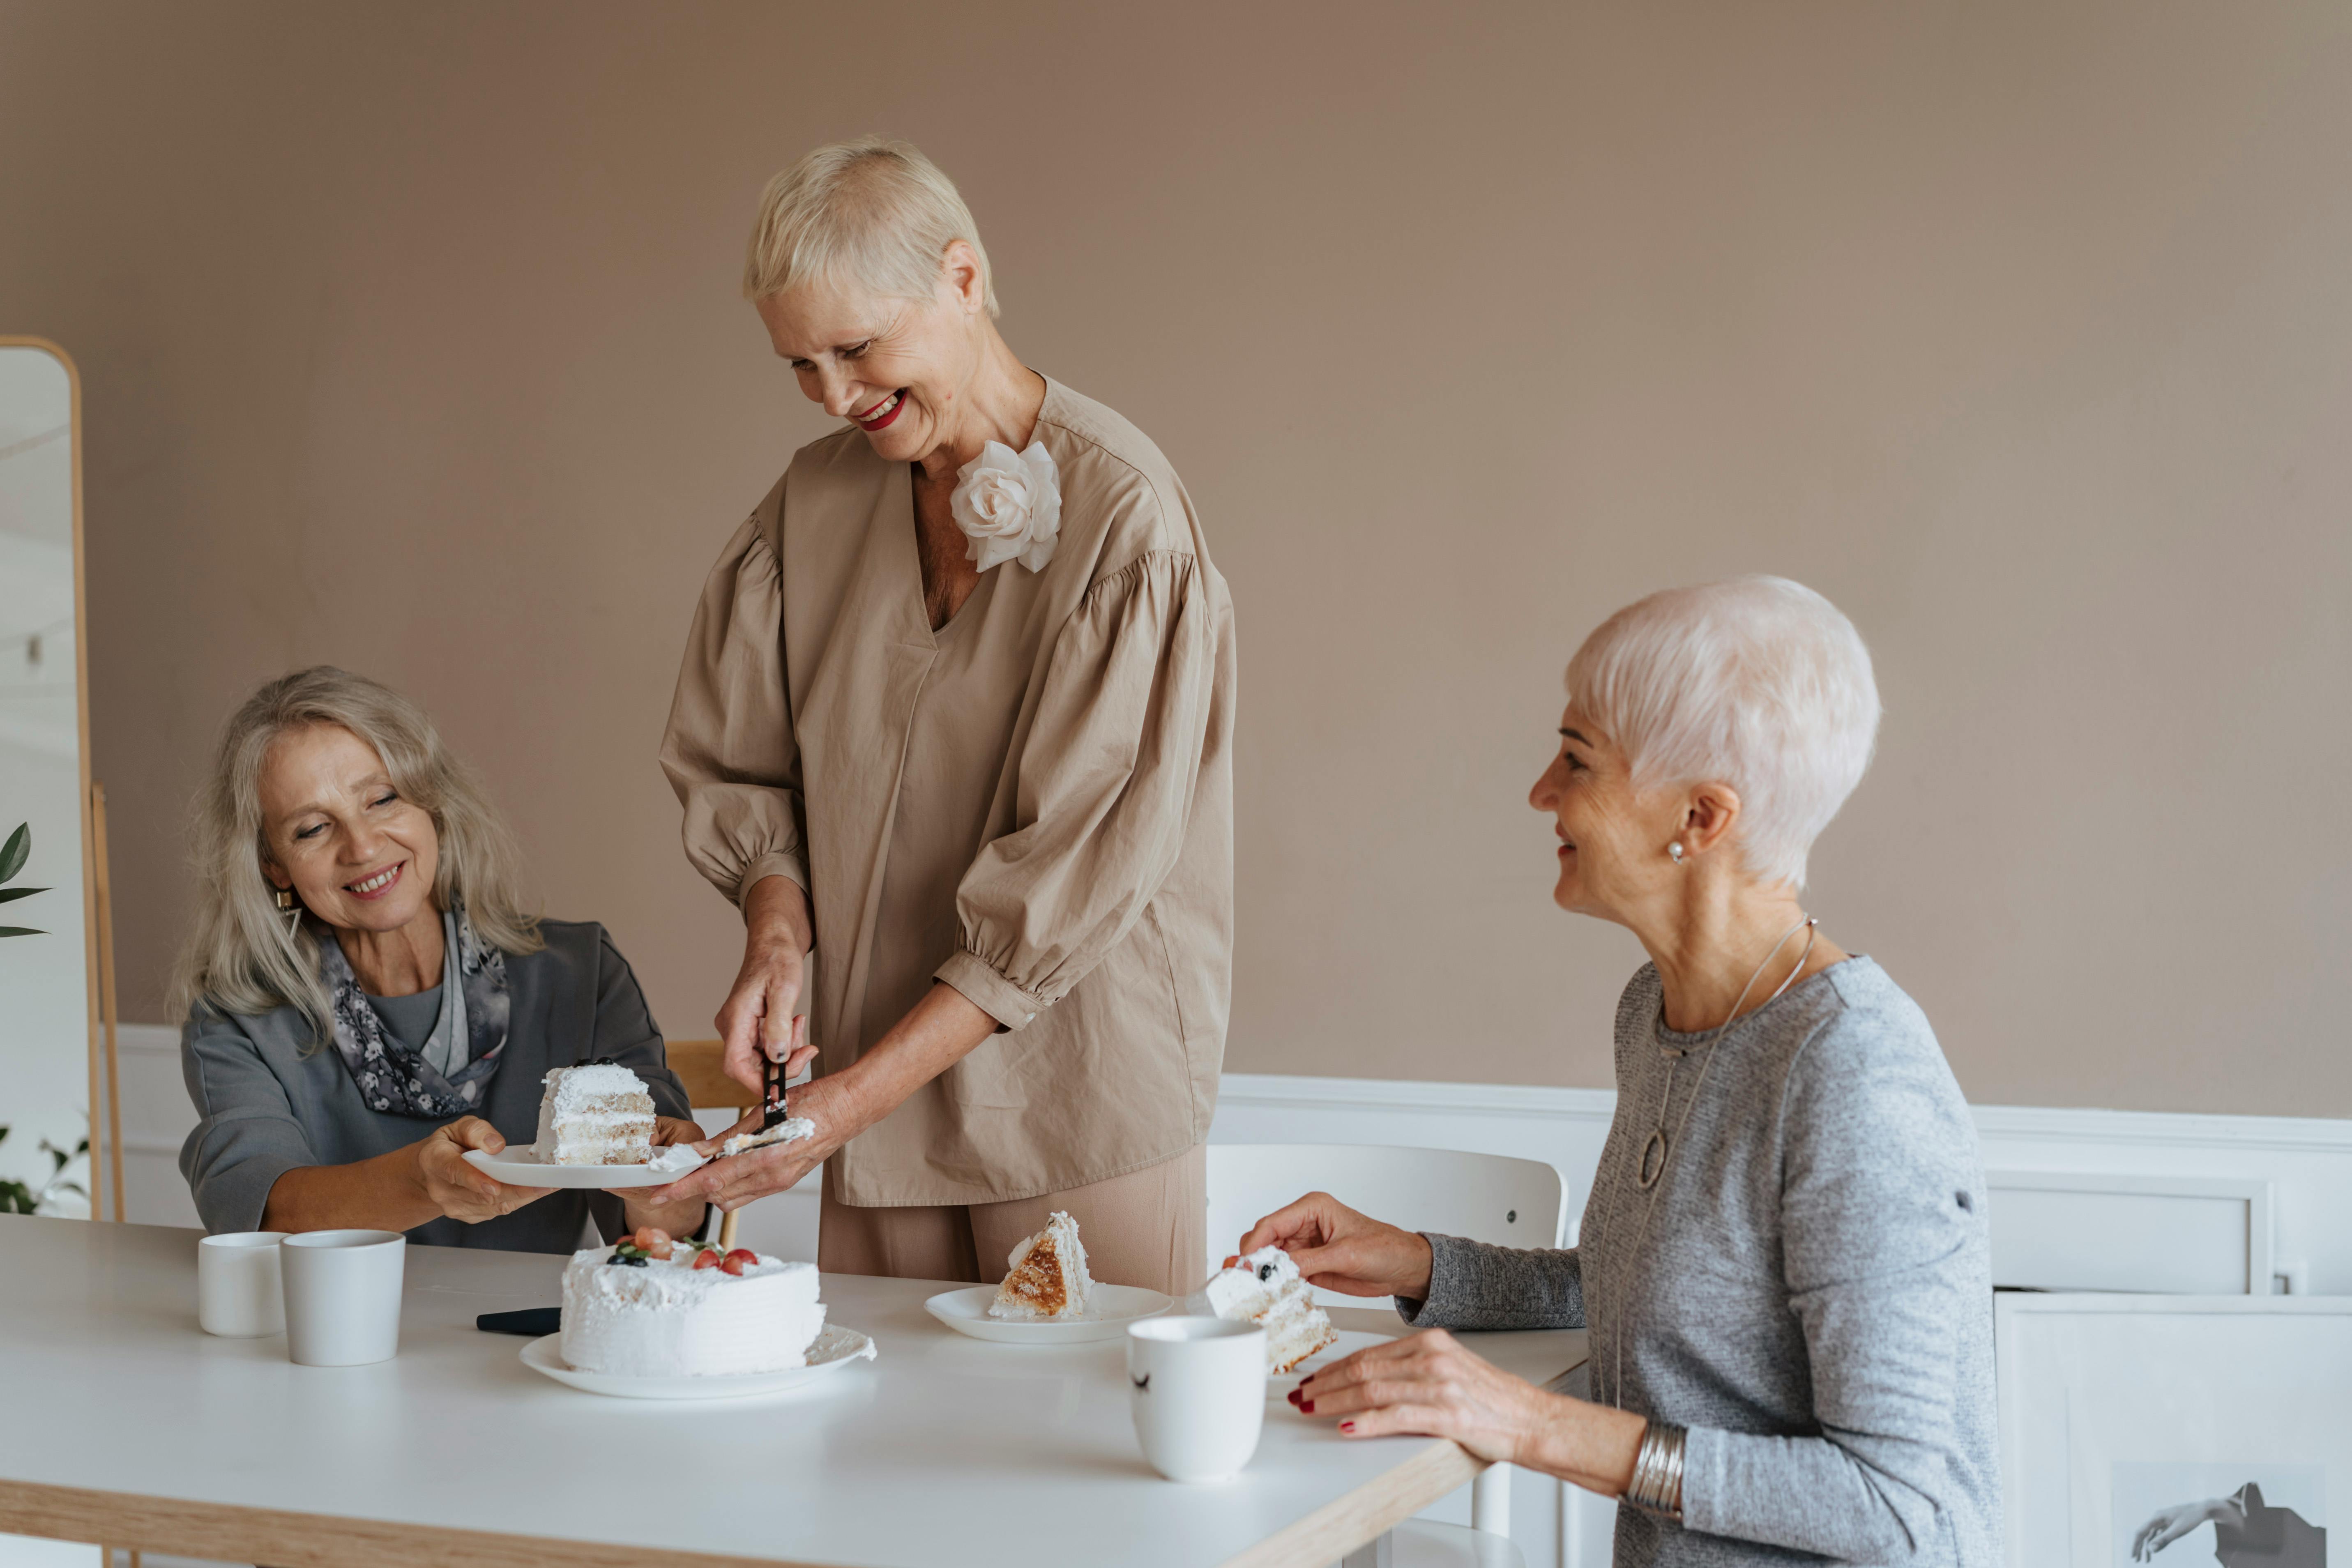 Older women enjoying cake and tea | Source: Pexels